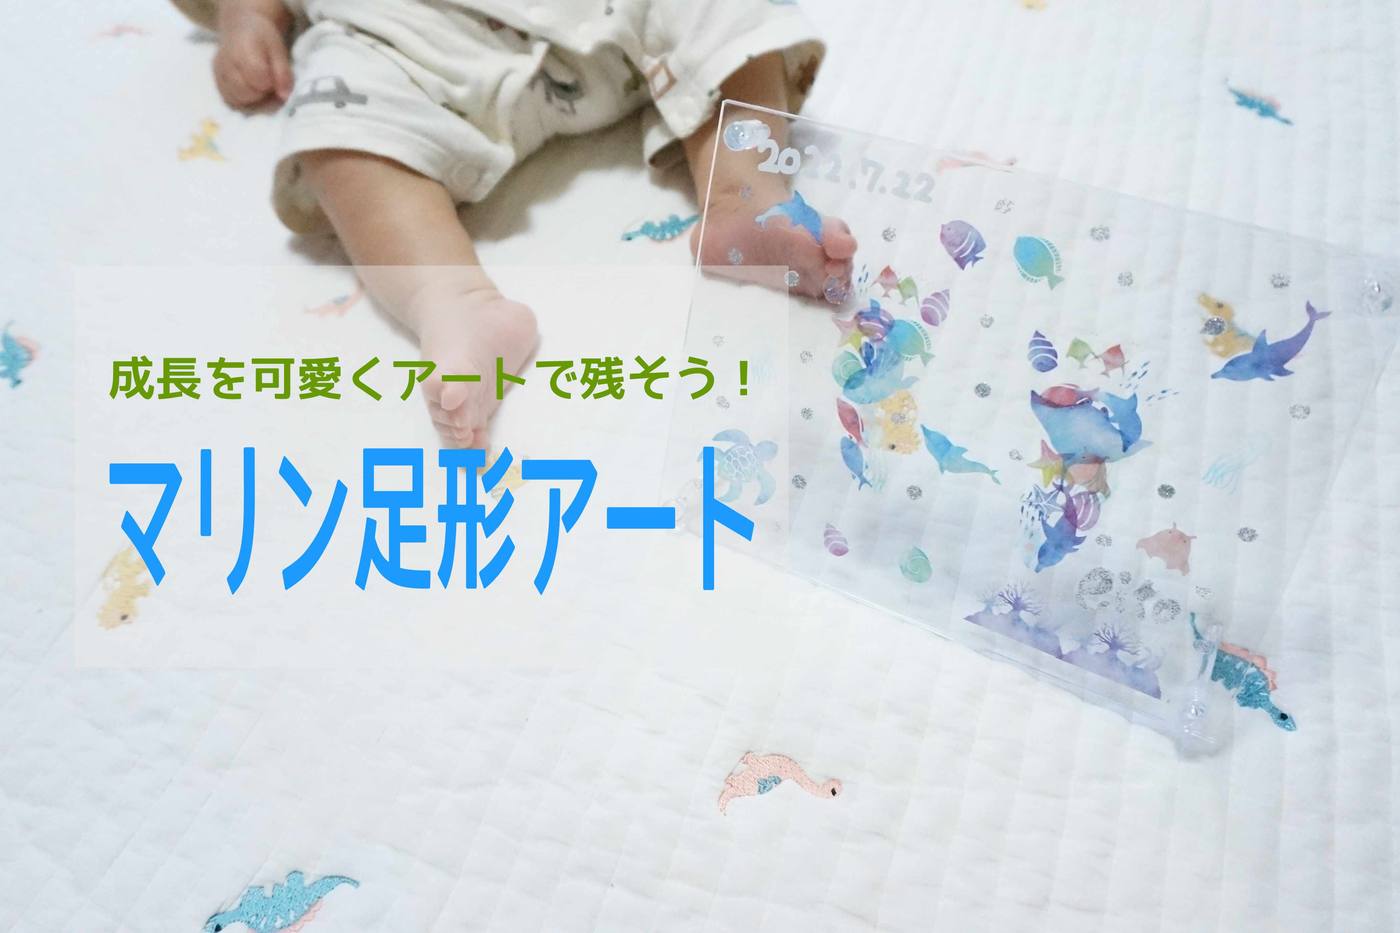 【手作り足形アート】赤ちゃんの足形を100均マリンシールを使って可愛く残そう！ image